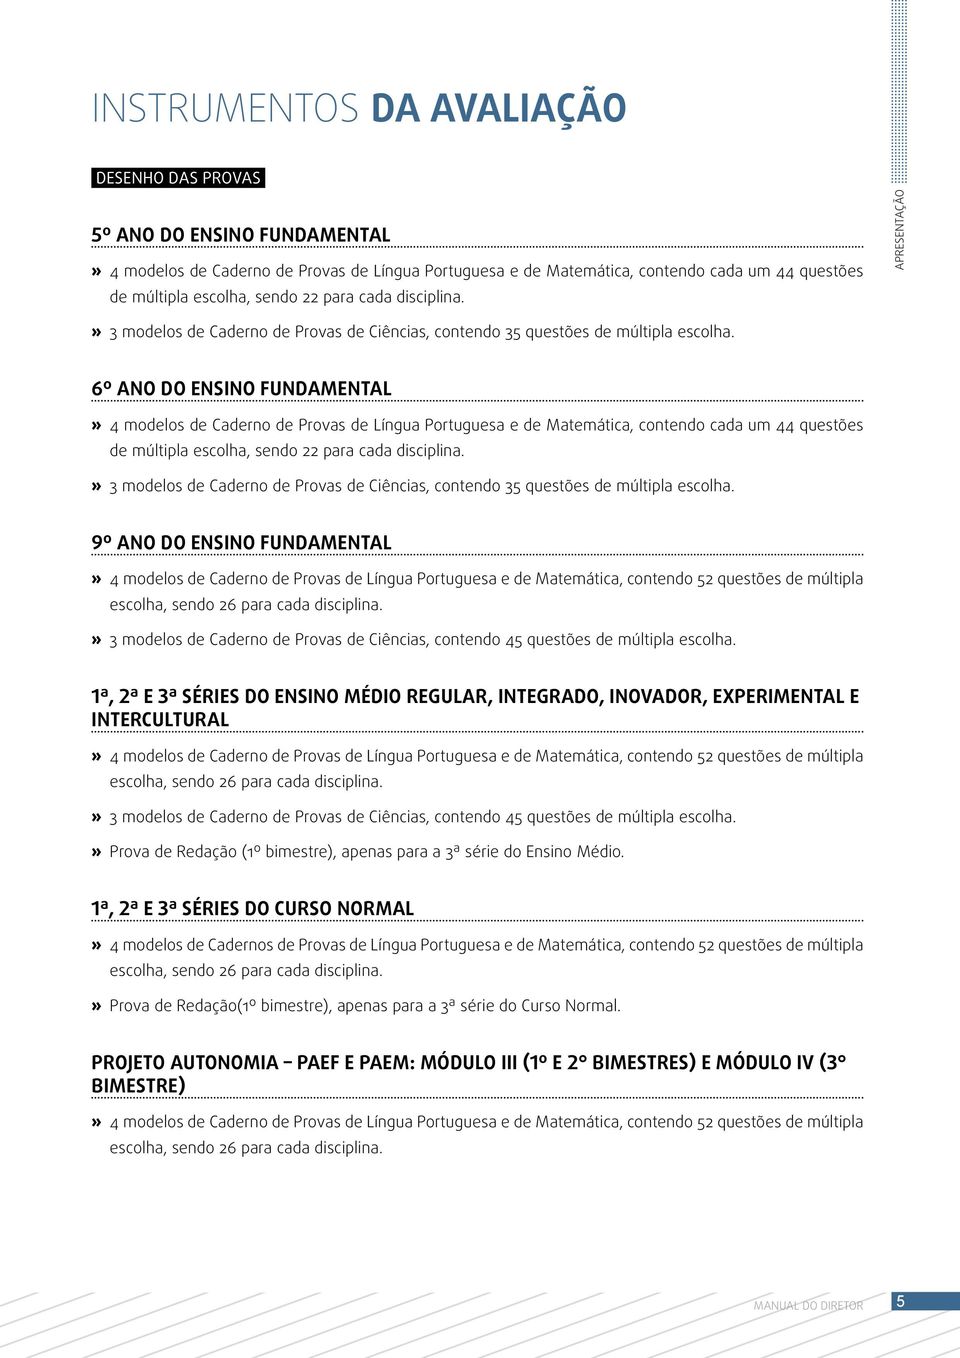 6º ANO DO ENSINO FUNDAMENTAL 4 modelos de Caderno de Provas de Língua Portuguesa e de Matemática, contendo cada um 44 questões de múltipla escolha, sendo 22 para cada disciplina.